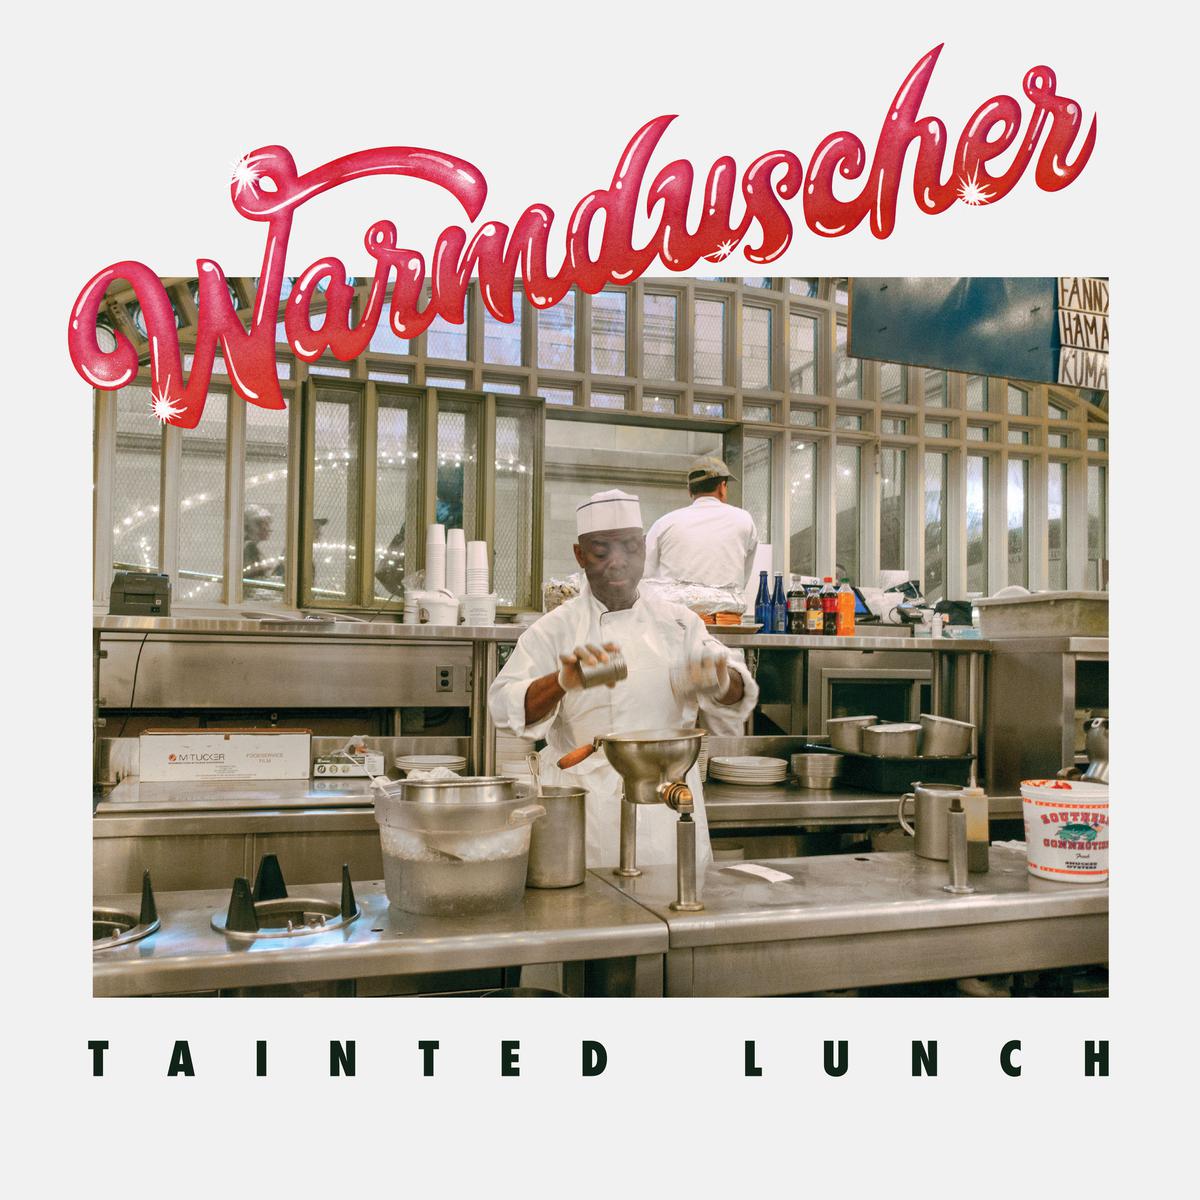 Warmduscher - Tainted Lunch - LP